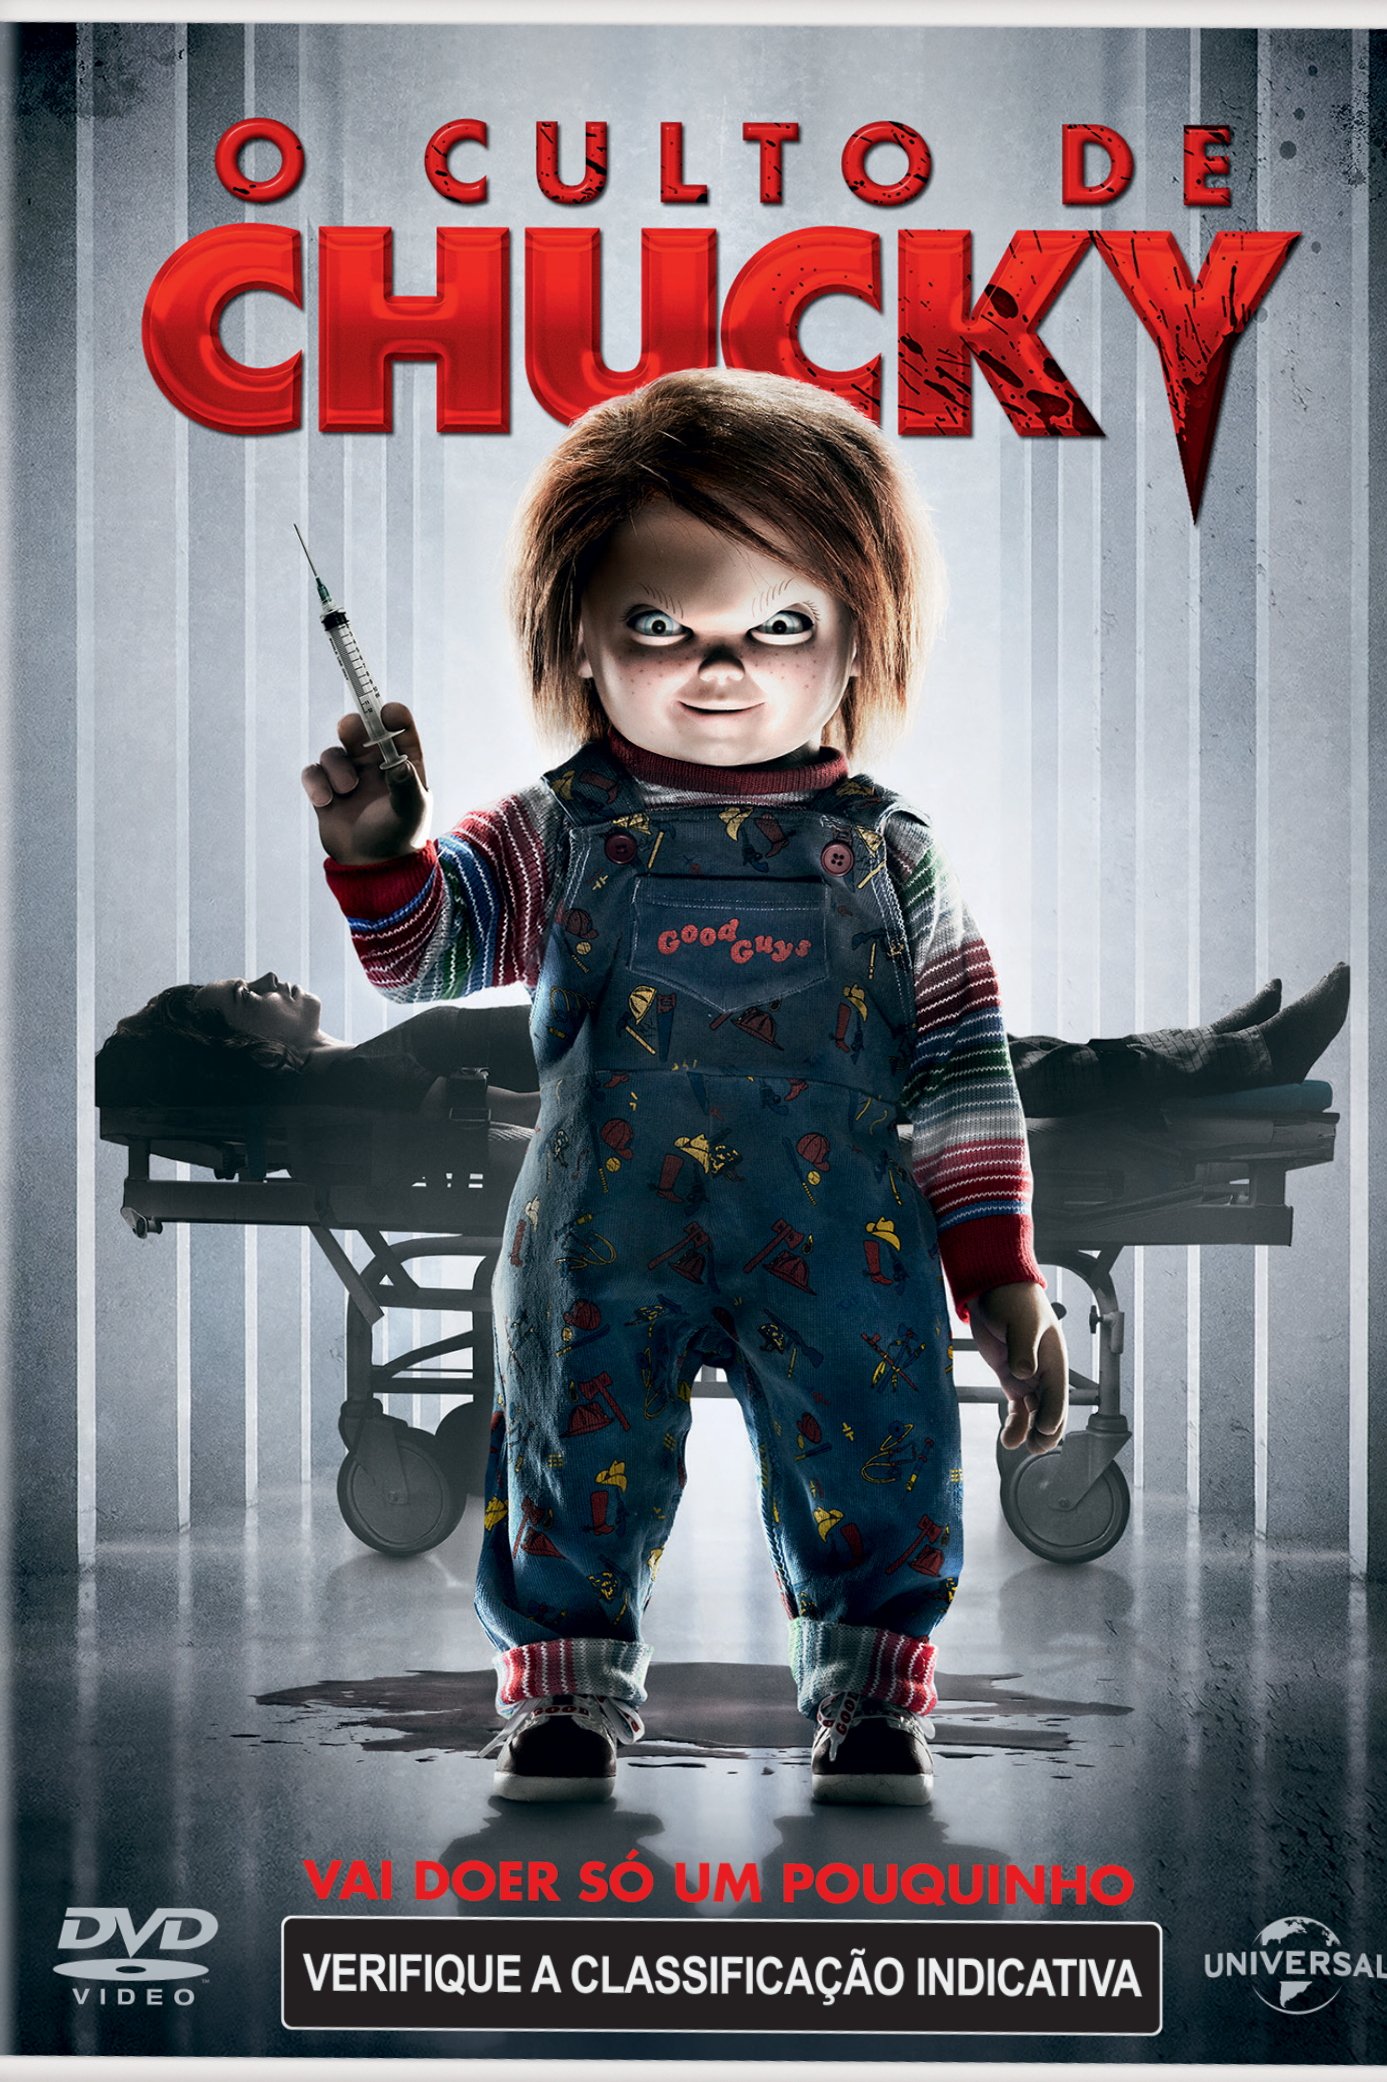 FRASES DE SÉRIES E FILMES 🎬 on Instagram: “Vocês gostam dos filmes do  Chucky? 😂 Filme: O Culto de Chucky • Para ver m…